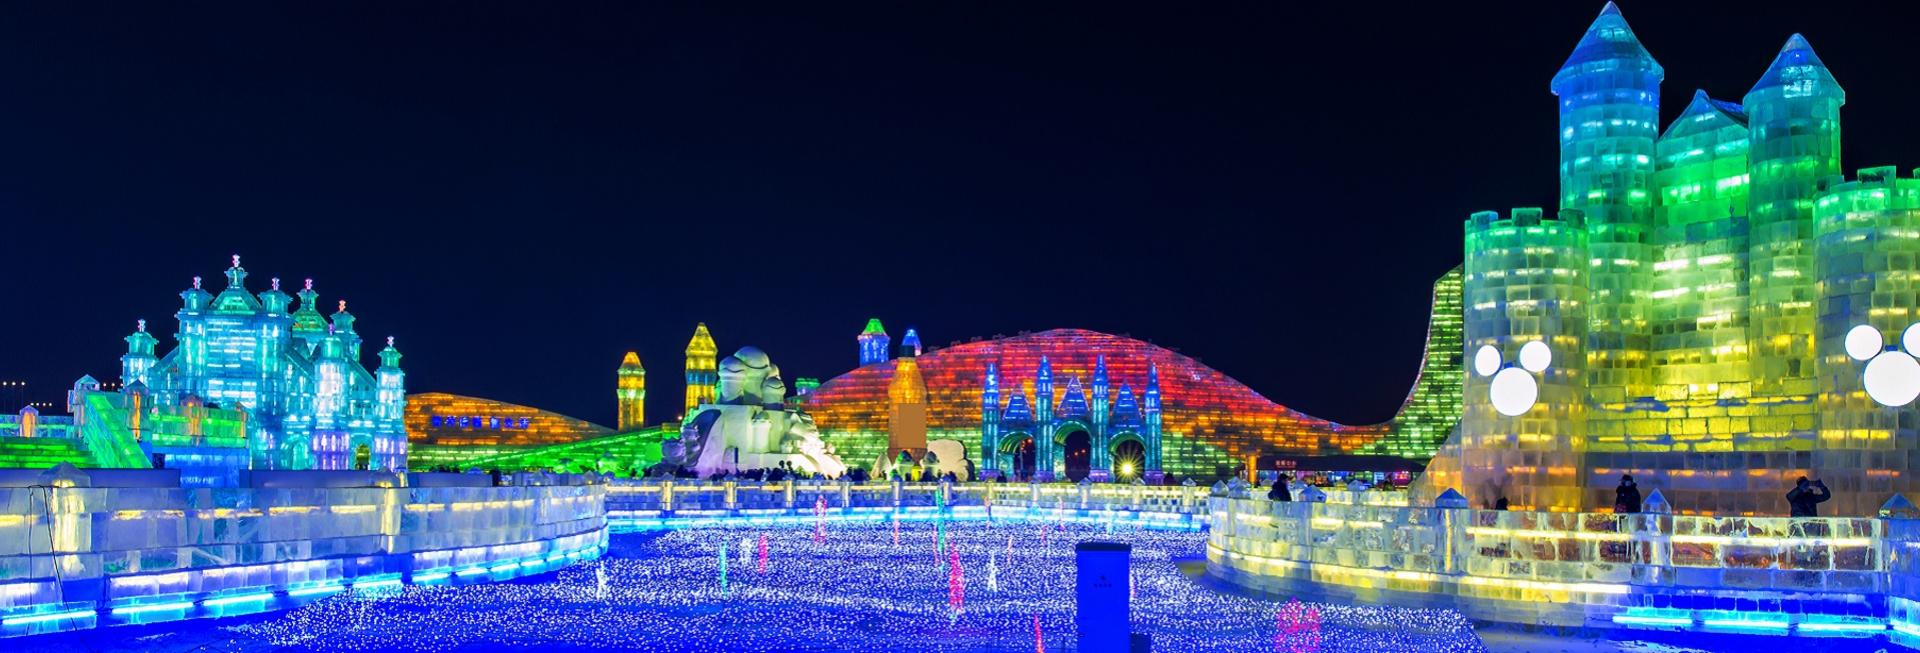 Ice Festival, Harbin, China